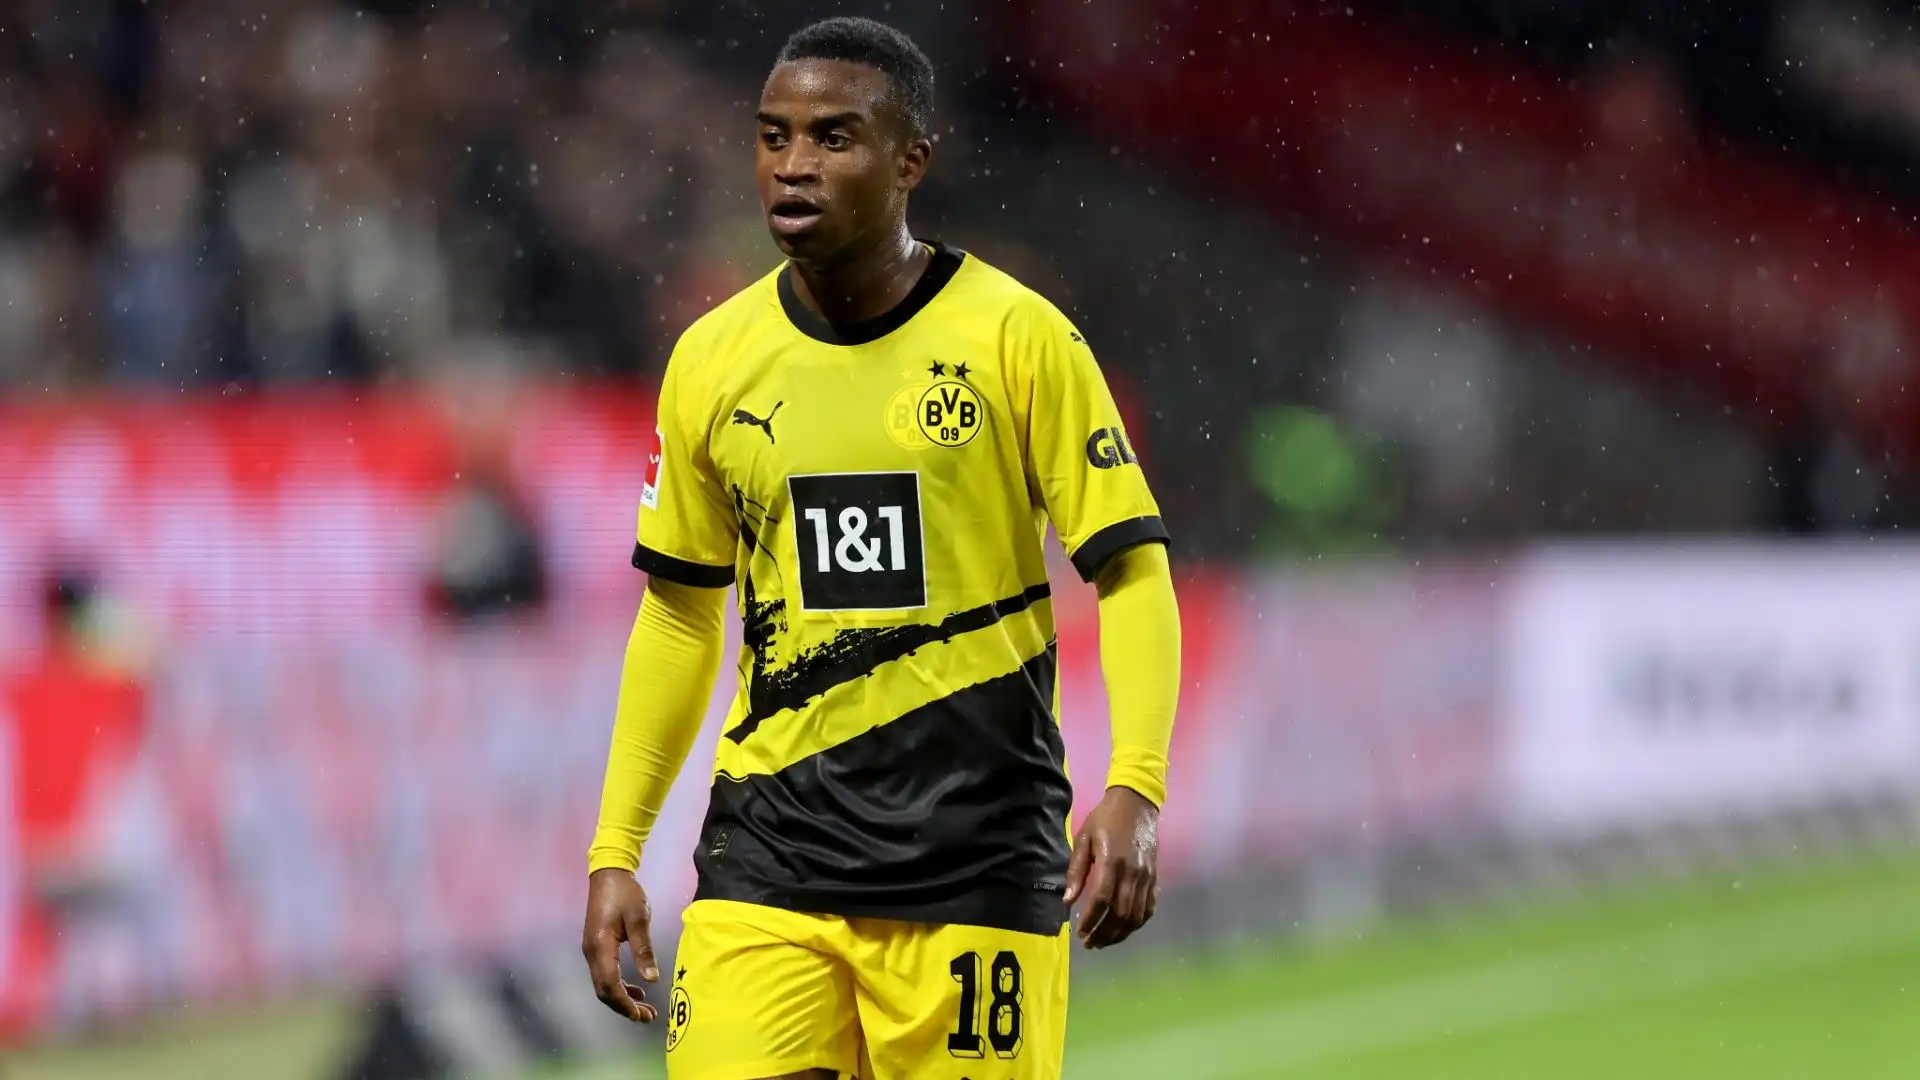 L'attaccante ha un contratto con il Borussia Dortmund fino al 2026